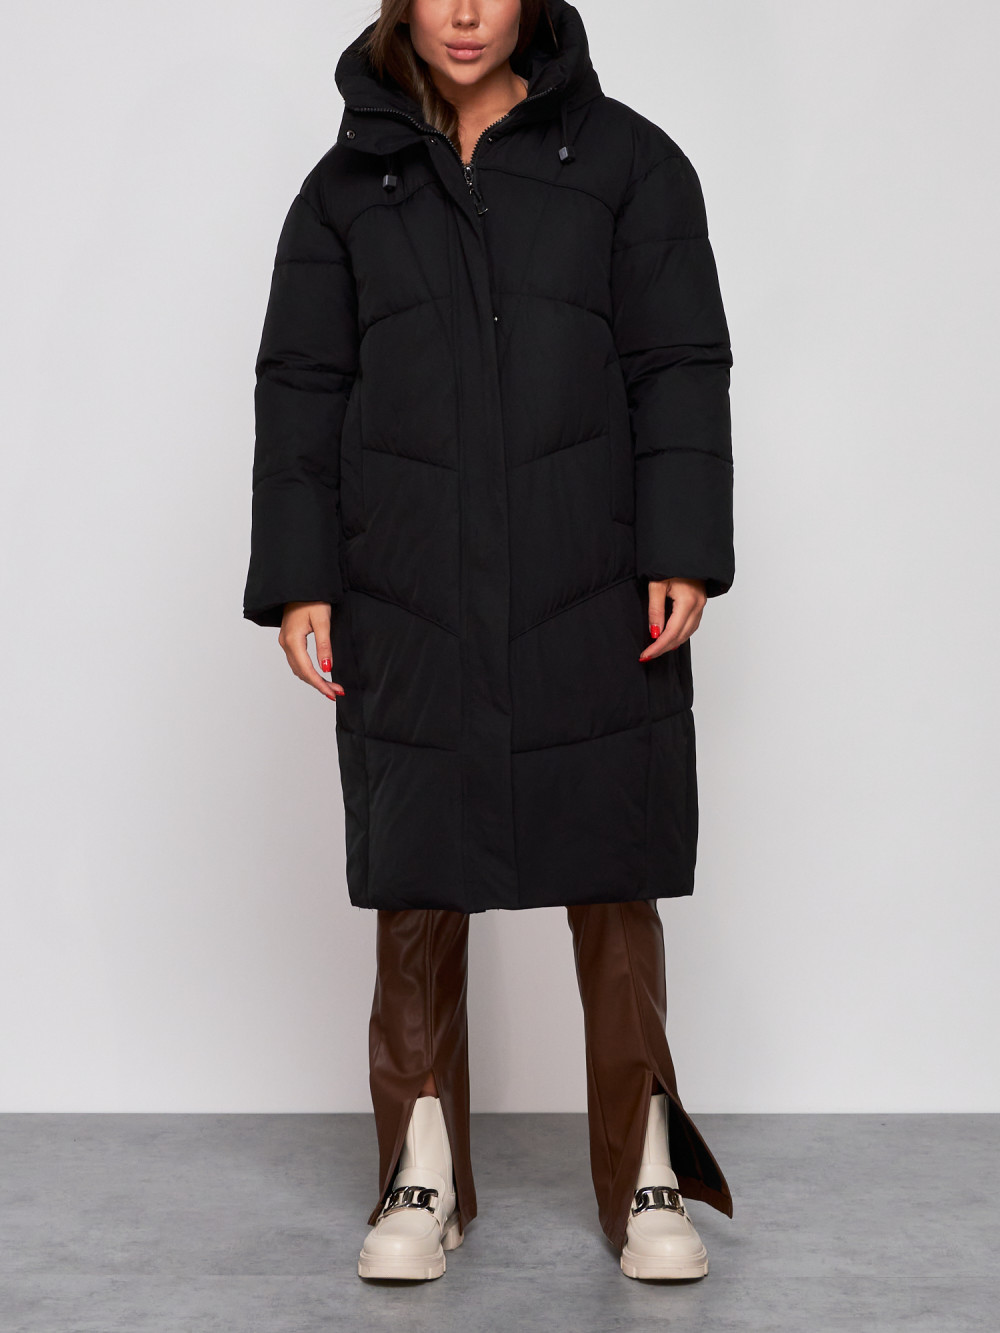 Пальто женское NoBrand AD52326 черное XL